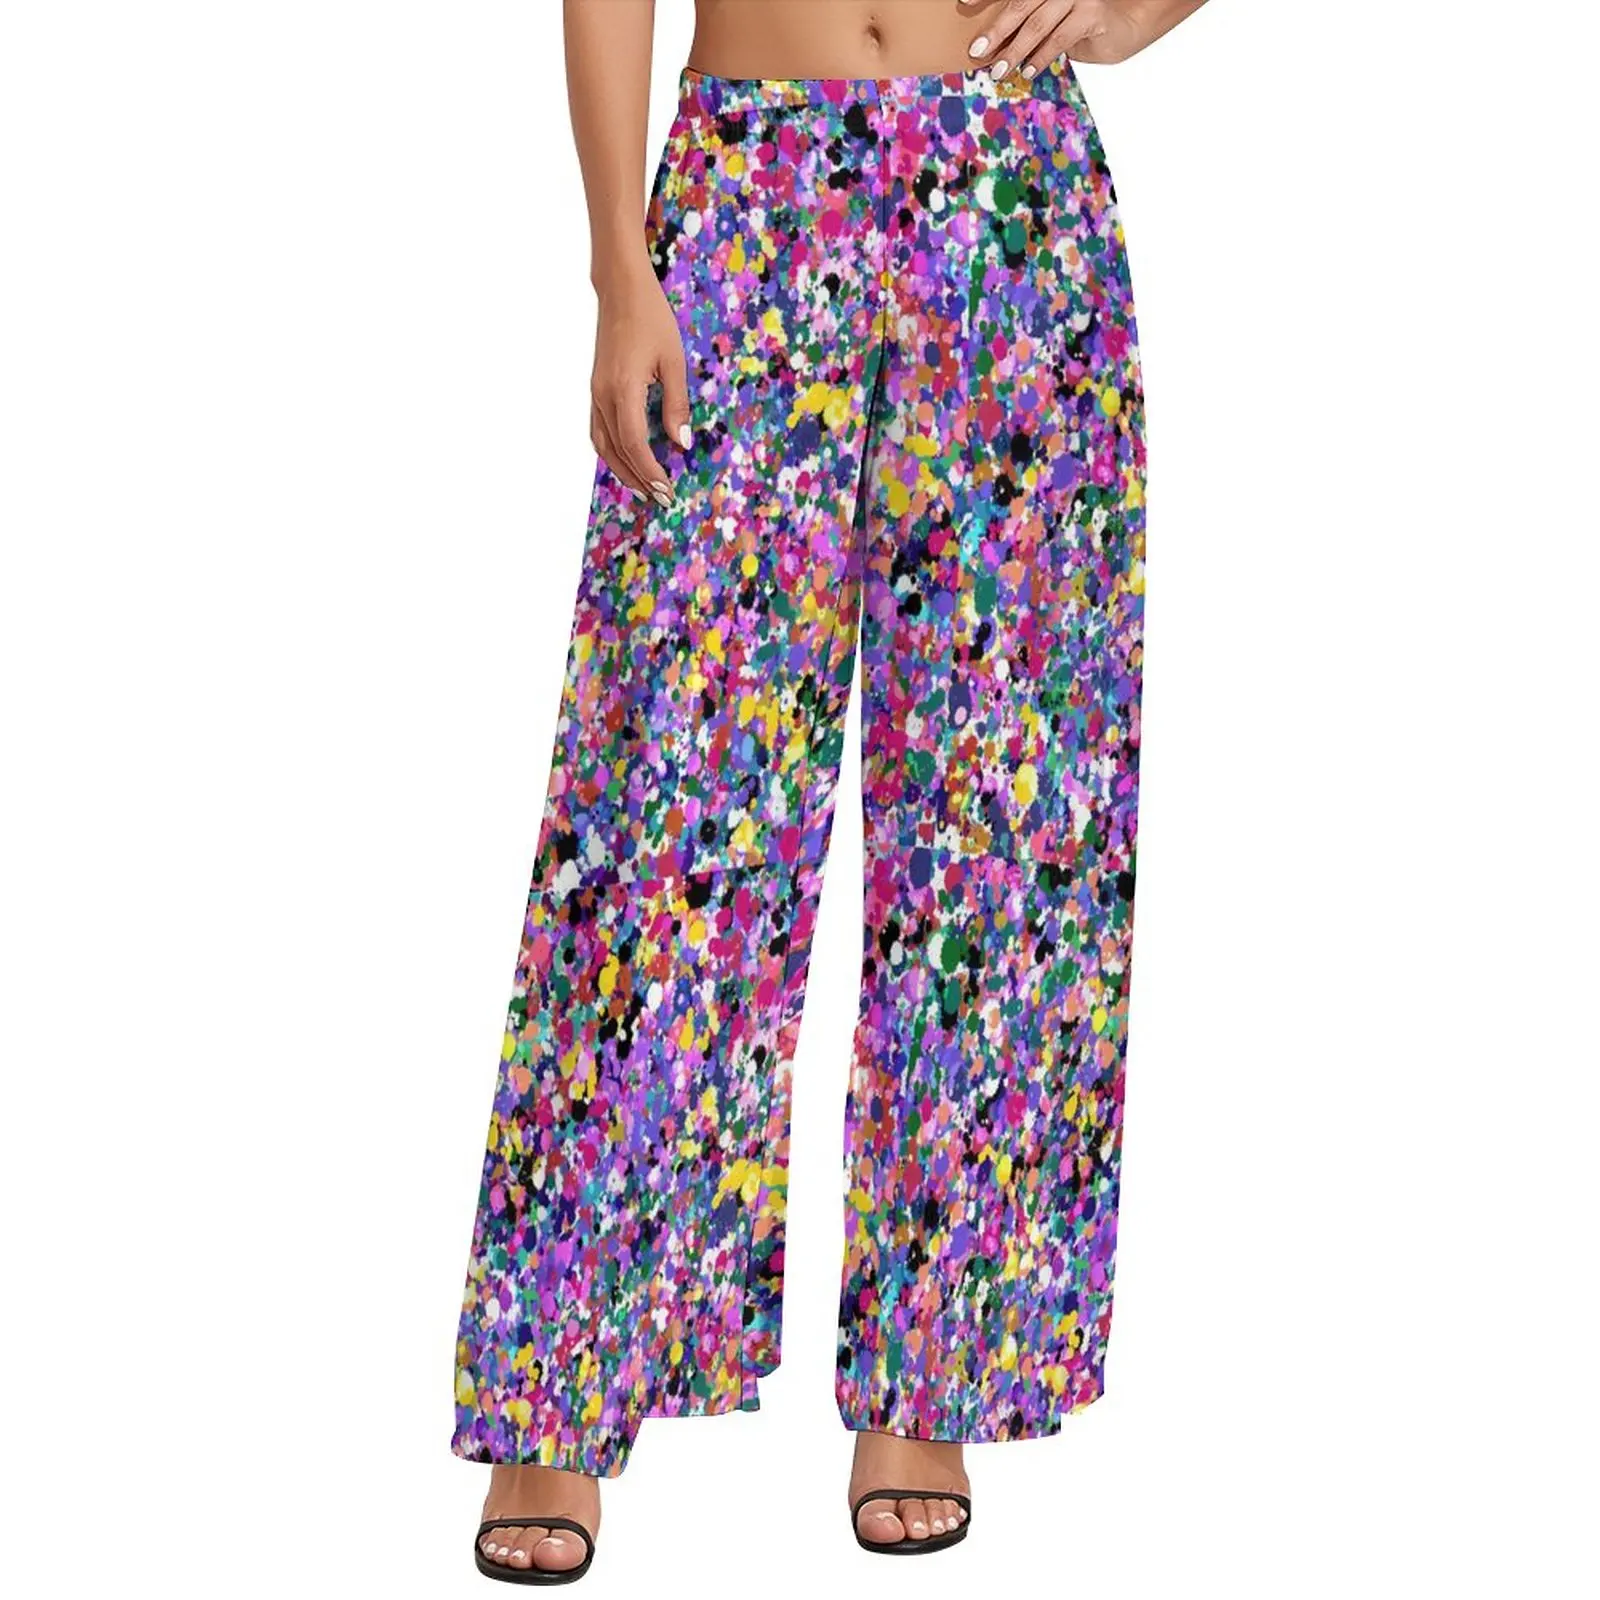 

Брюки женские с принтом неоновых красок, пляжные цветные широкие брюки с защипами, с завышенной талией, идея для подарка